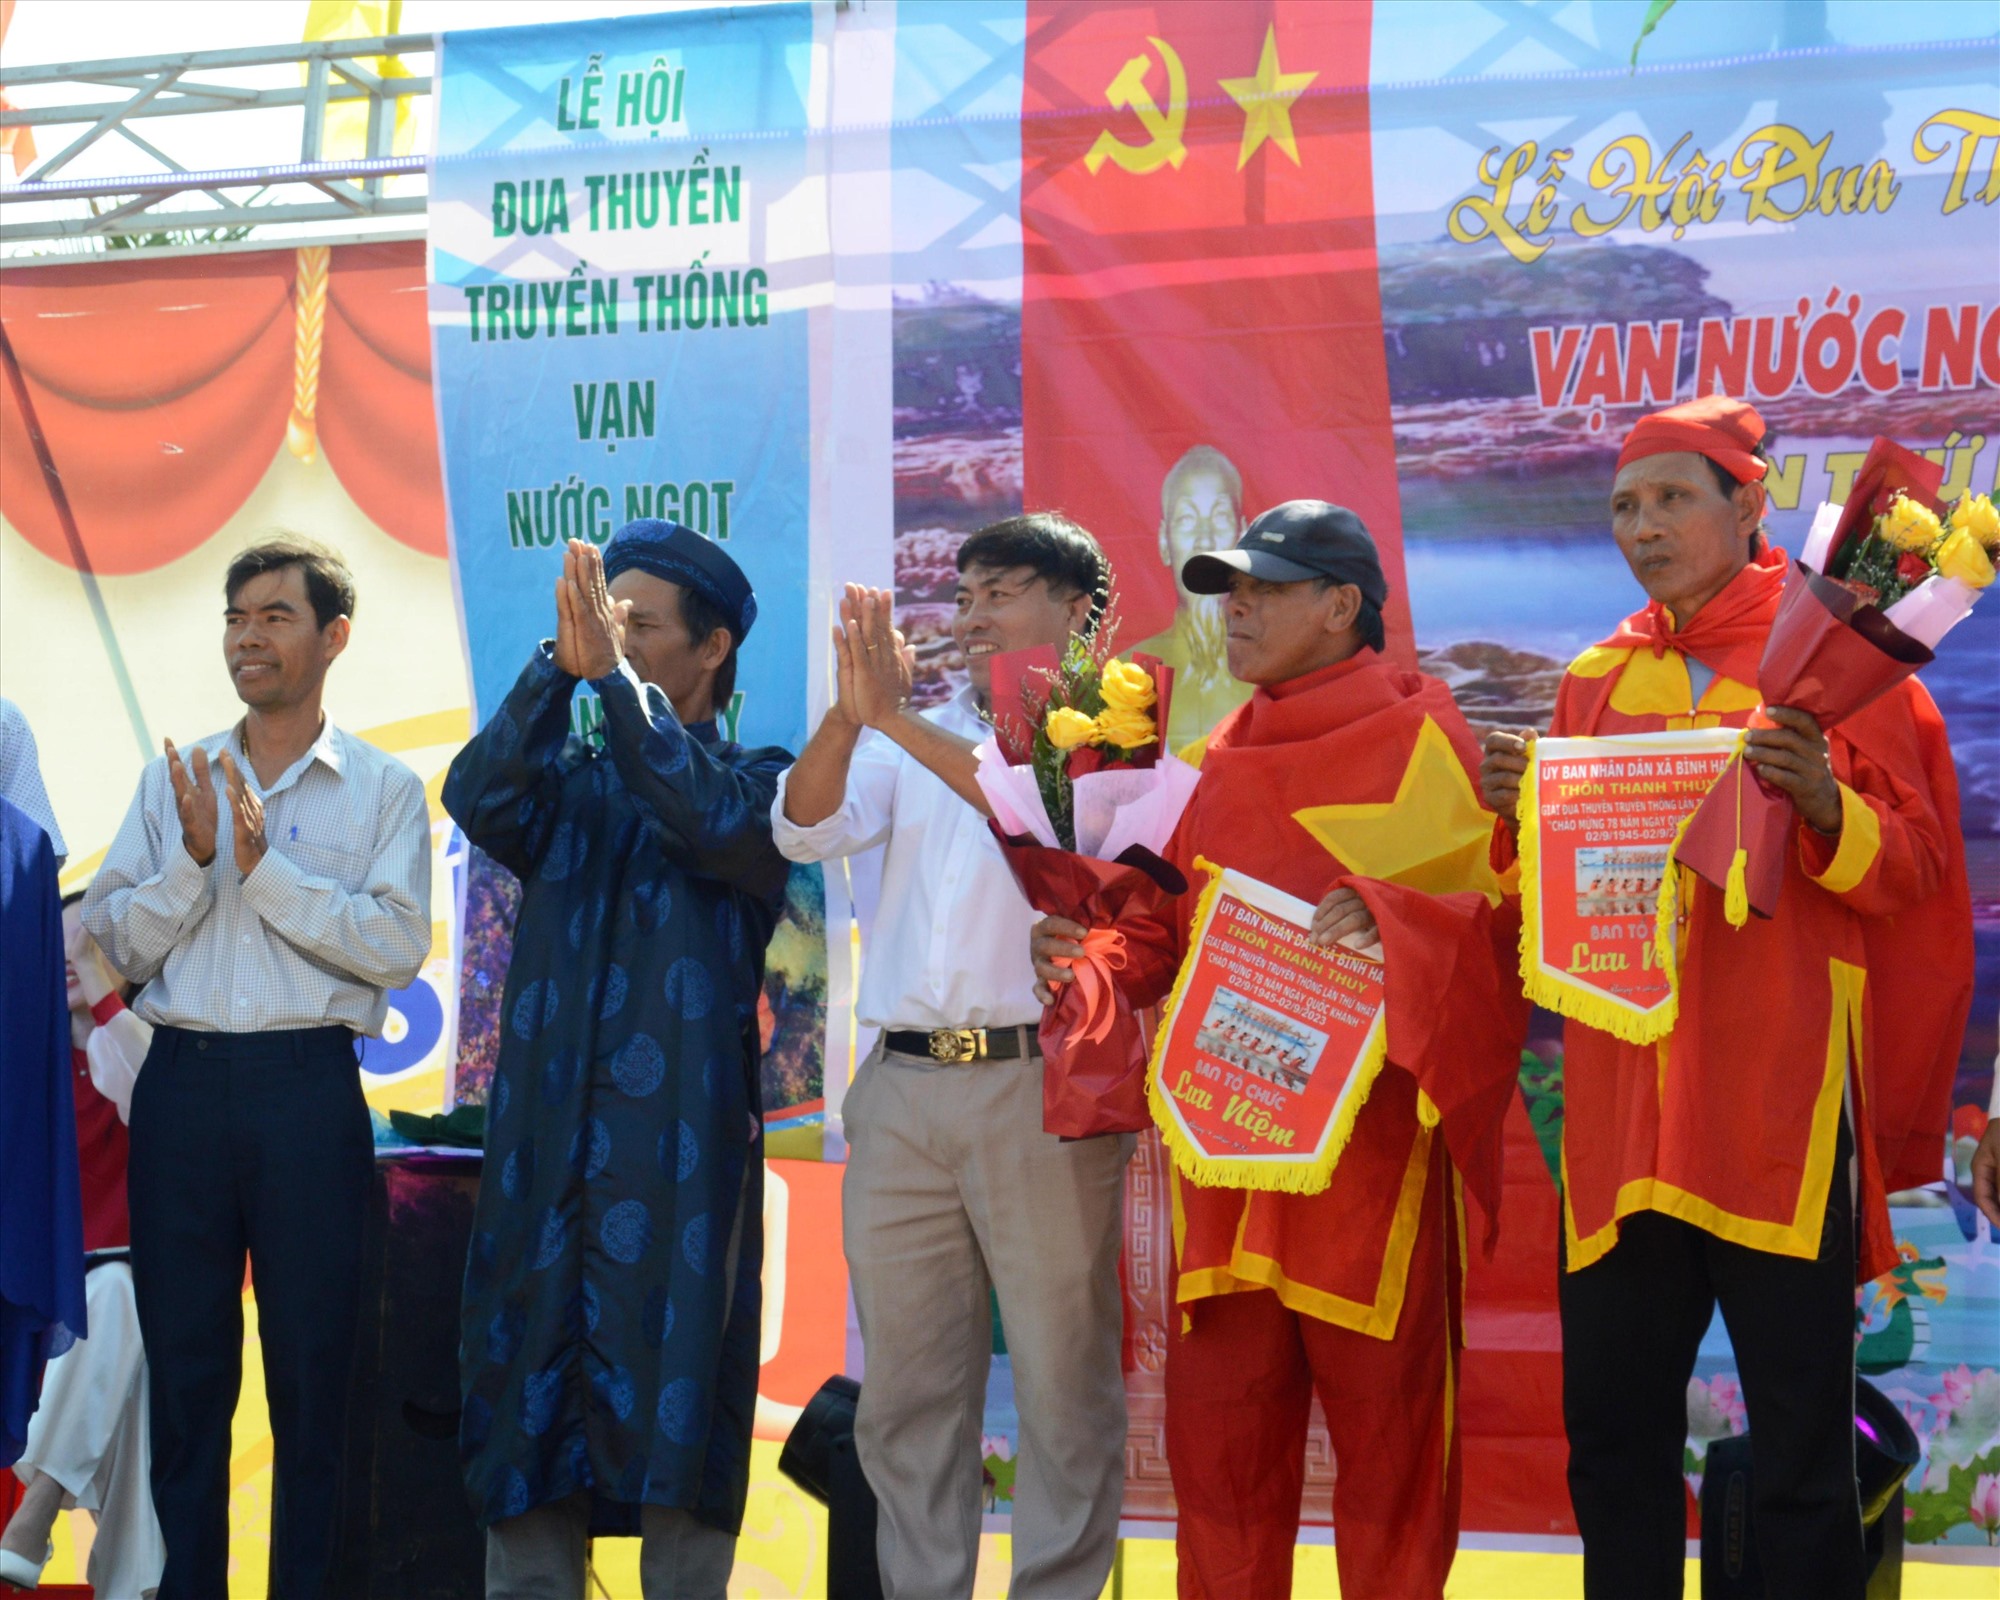 Sau một buổi thi đấu, đội thuyền phụng của thôn Thanh Thủy đoạt giải nhất.